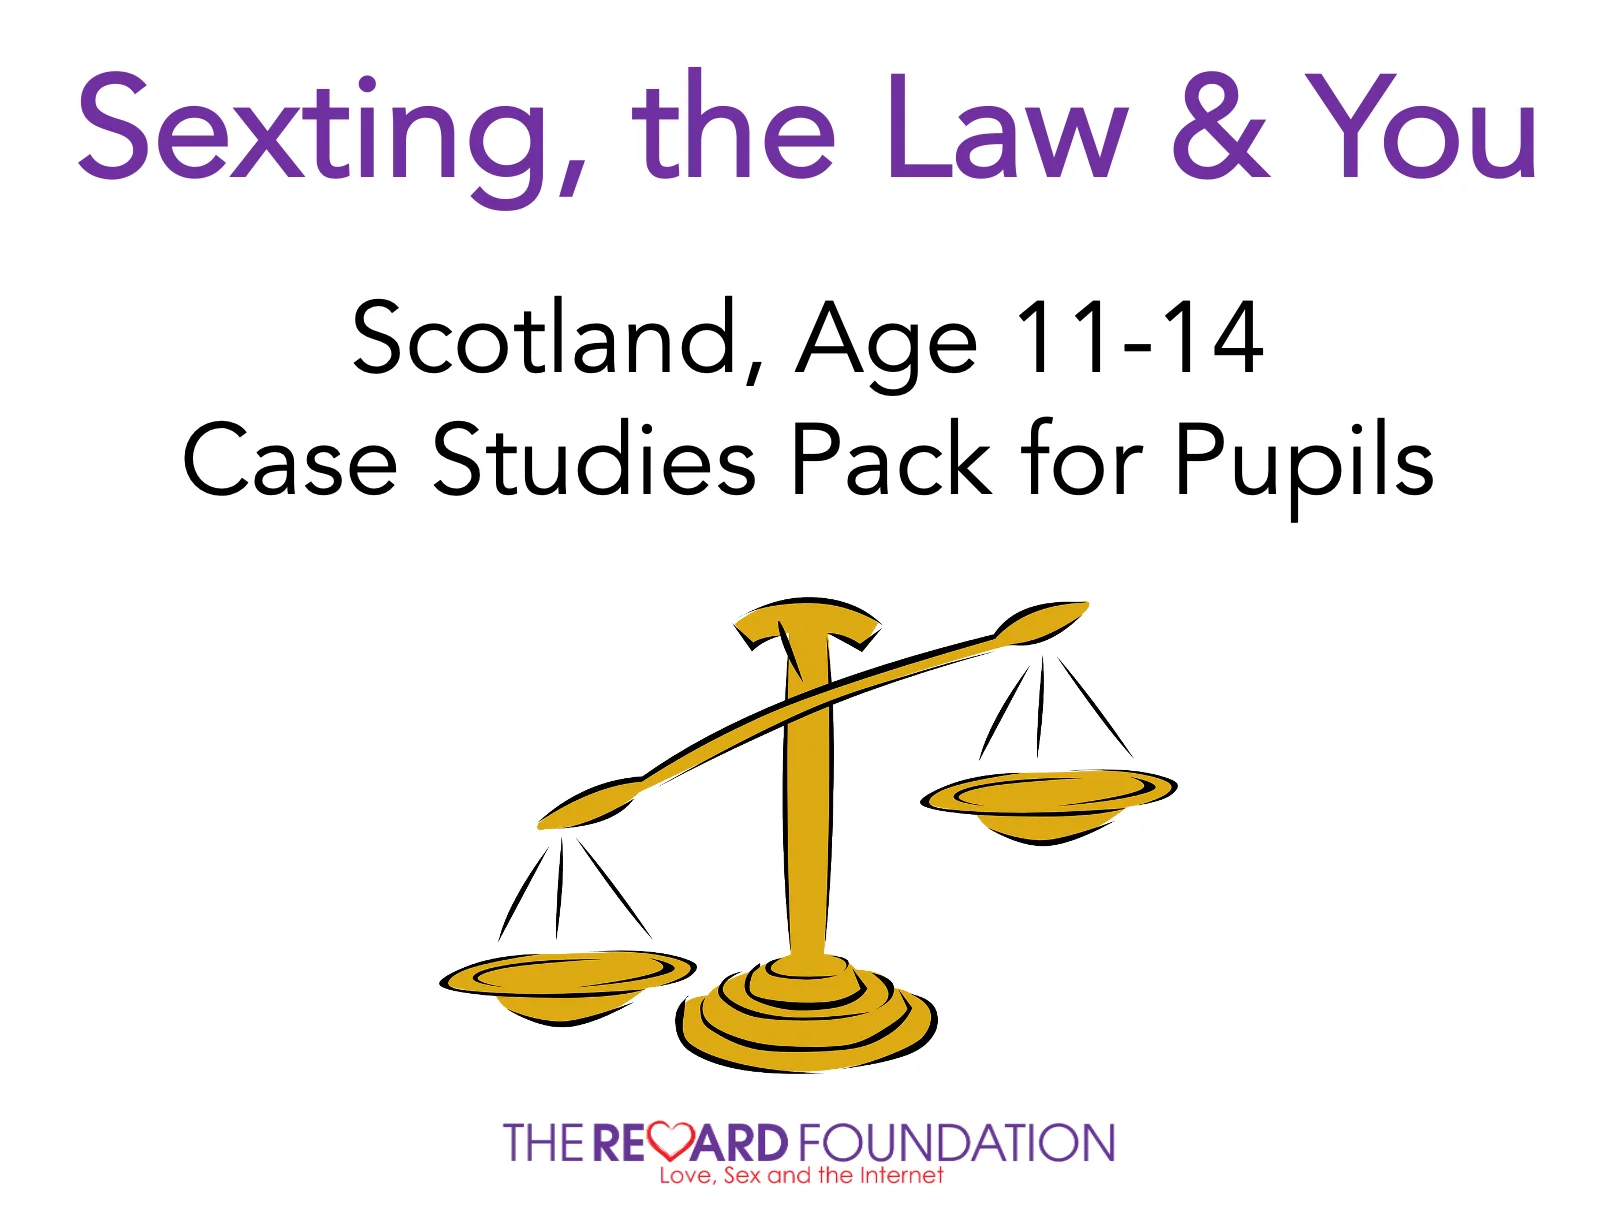 قانون الرسائل النصية في اسكتلندا